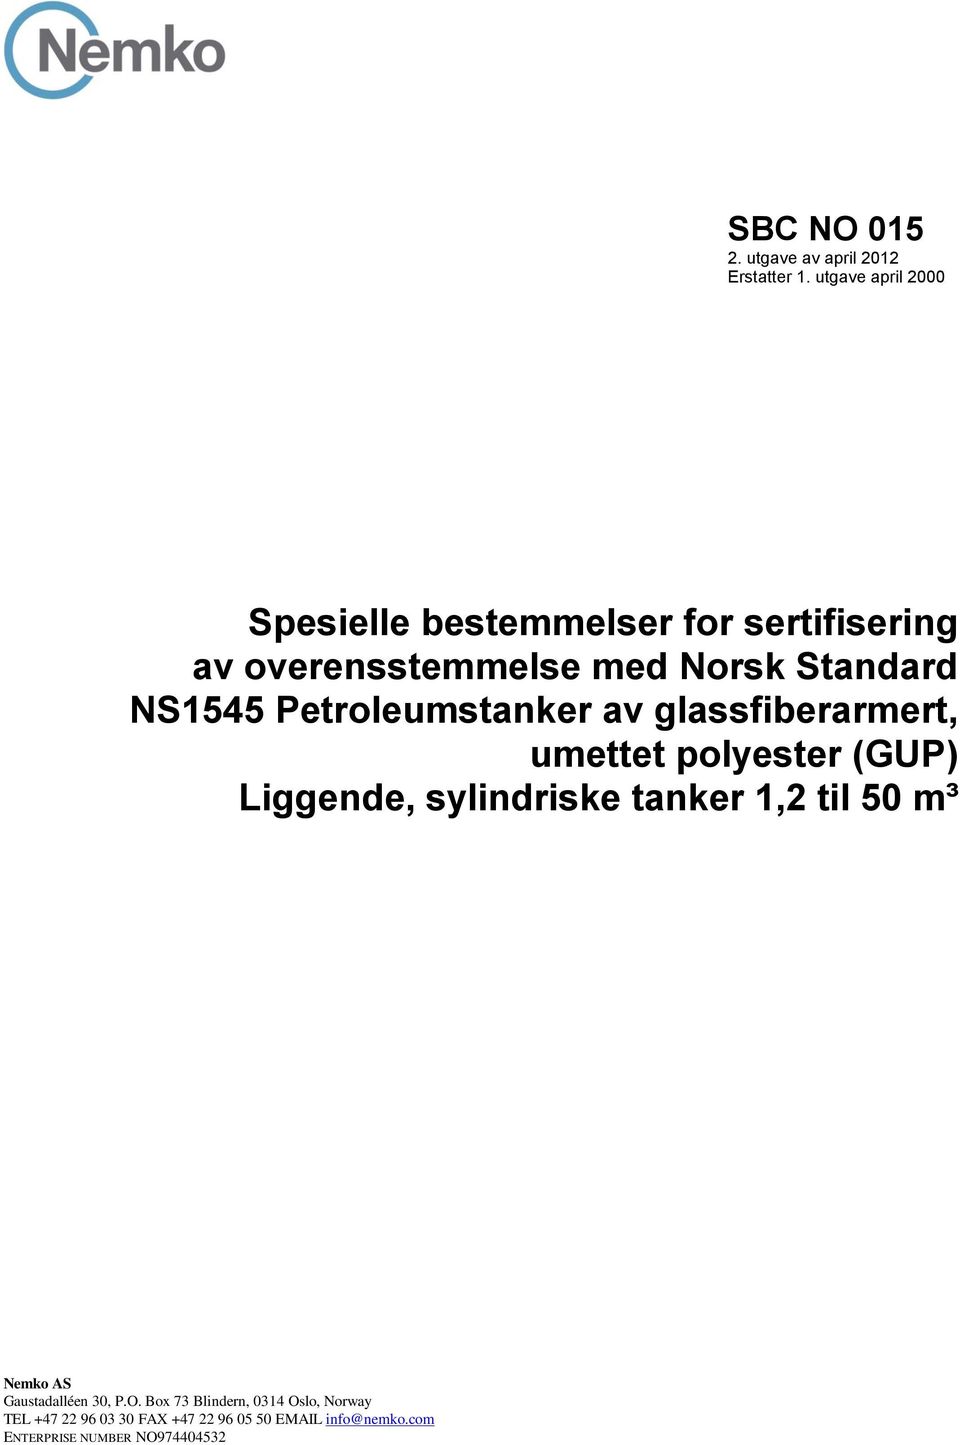 NS1545 Petroleumstanker av glassfiberarmert, umettet polyester (GUP) Liggende, sylindriske tanker 1,2